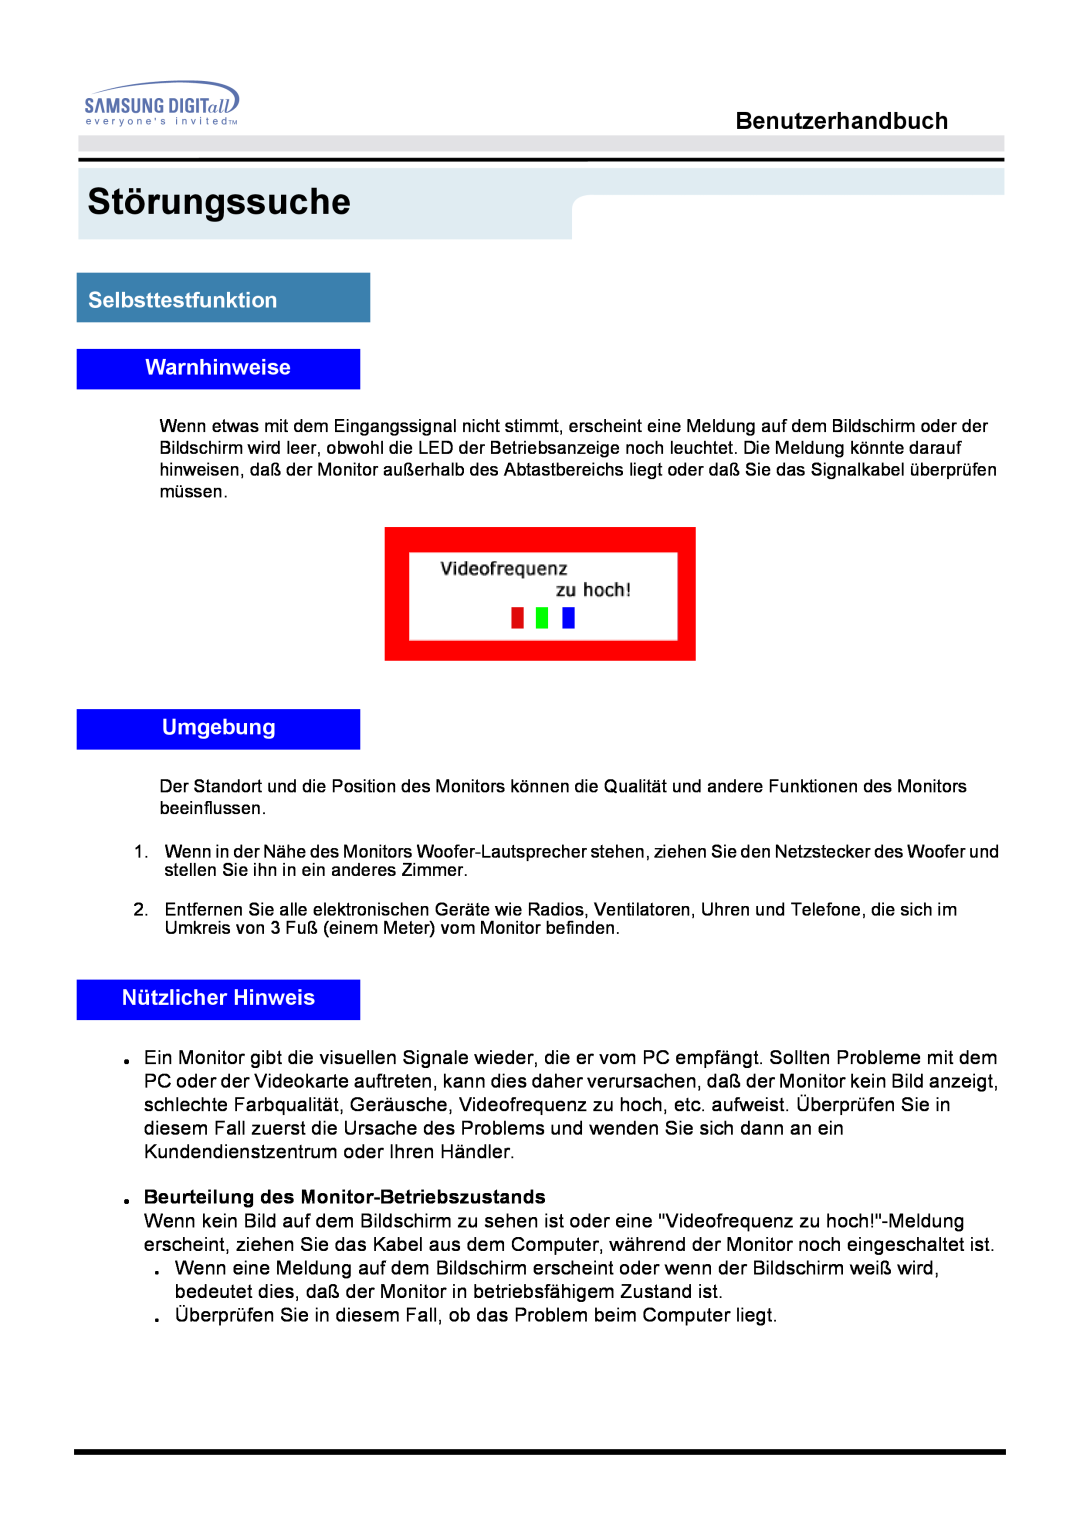 Samsung MO15ESDSZ/XTP manual Störungssuche, Benutzerhandbuch, Selbsttestfunktion Warnhinweise, Umgebung, Nützlicher Hinweis 